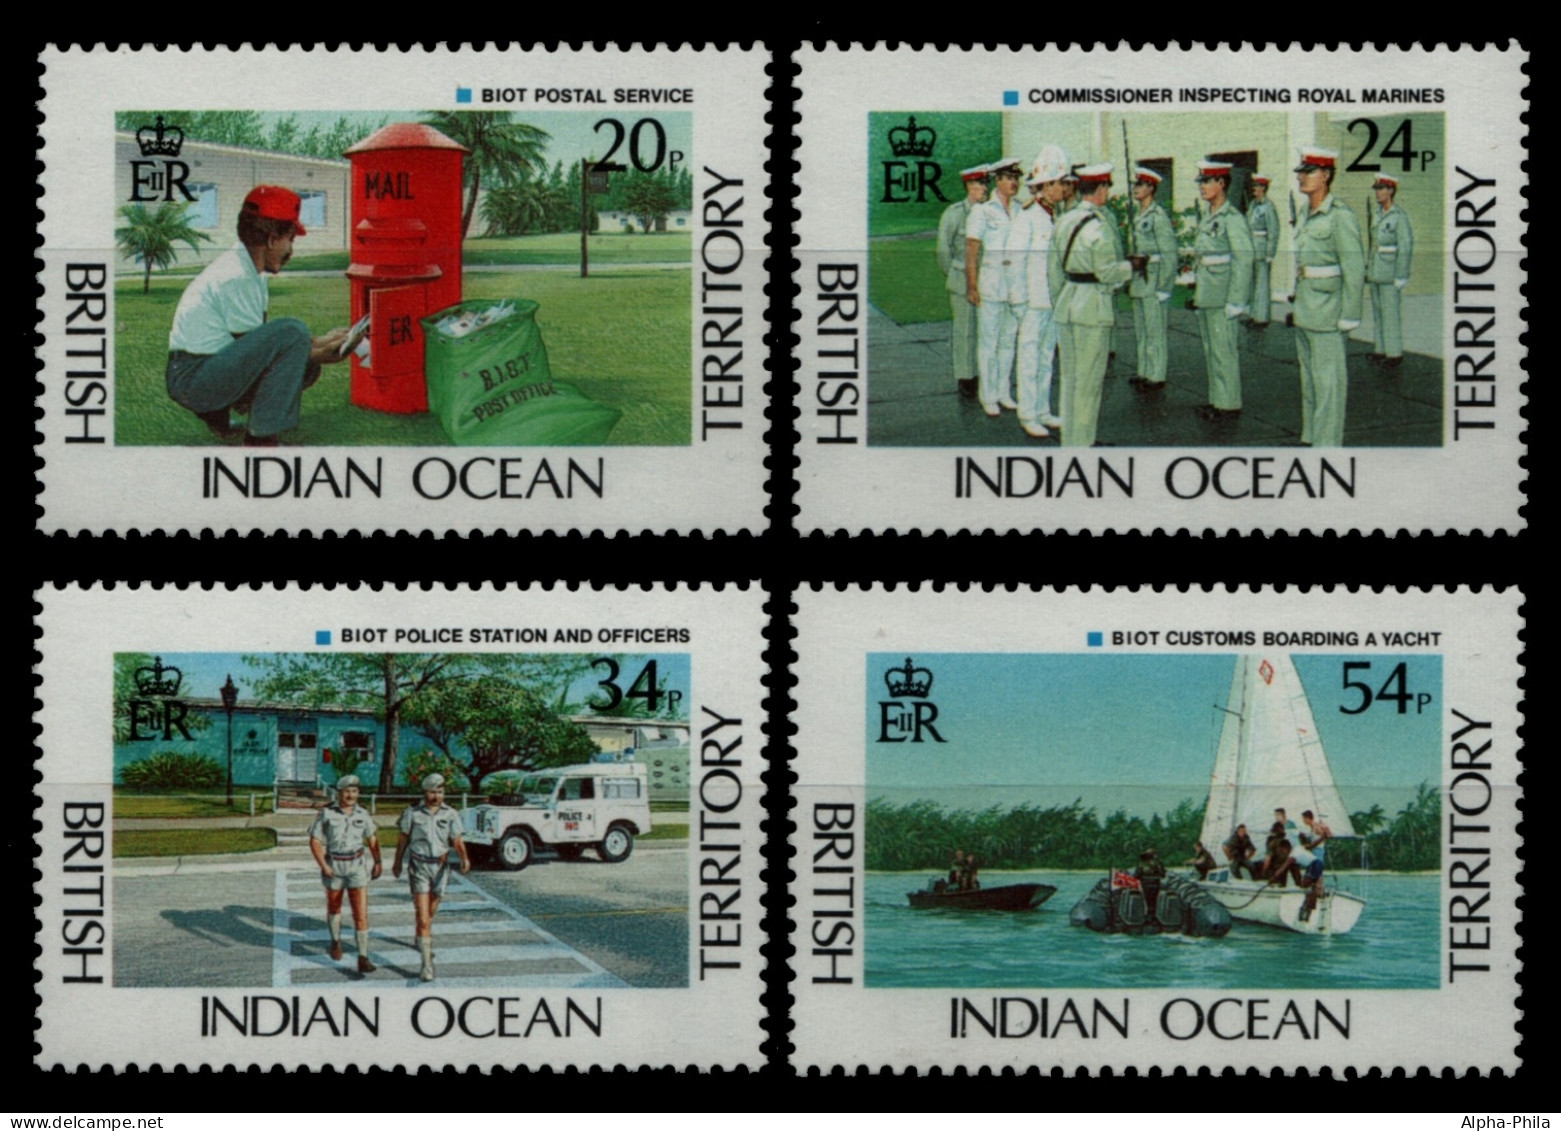 BIOT 1991 - Mi-Nr. 111-114 ** - MNH - Post - Polizei - Zoll - Britisches Territorium Im Indischen Ozean